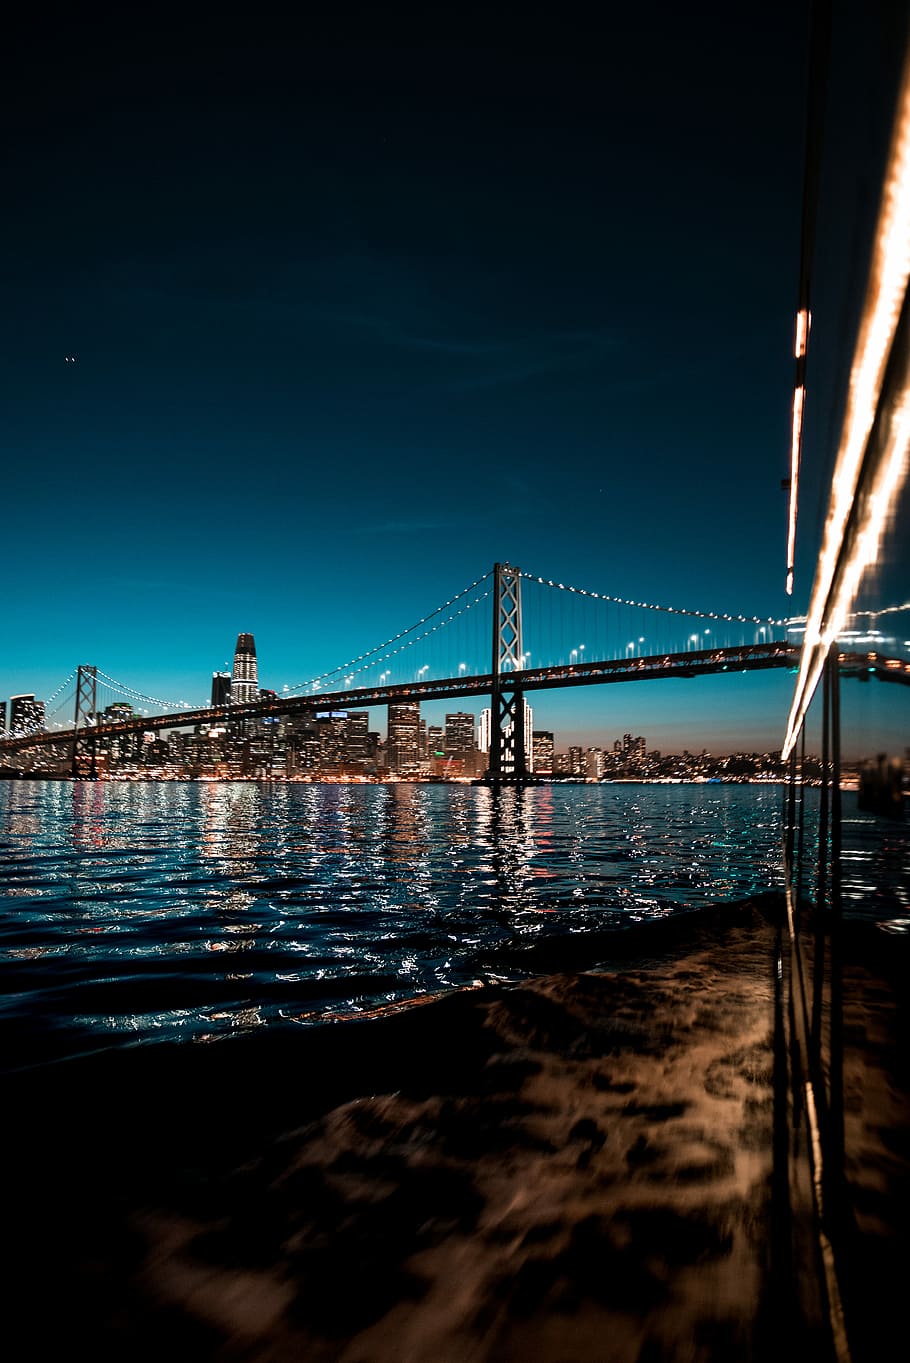 San Francisco-Oakland Bay Bridge, California during nighttime, gray truss bridge during nighttime